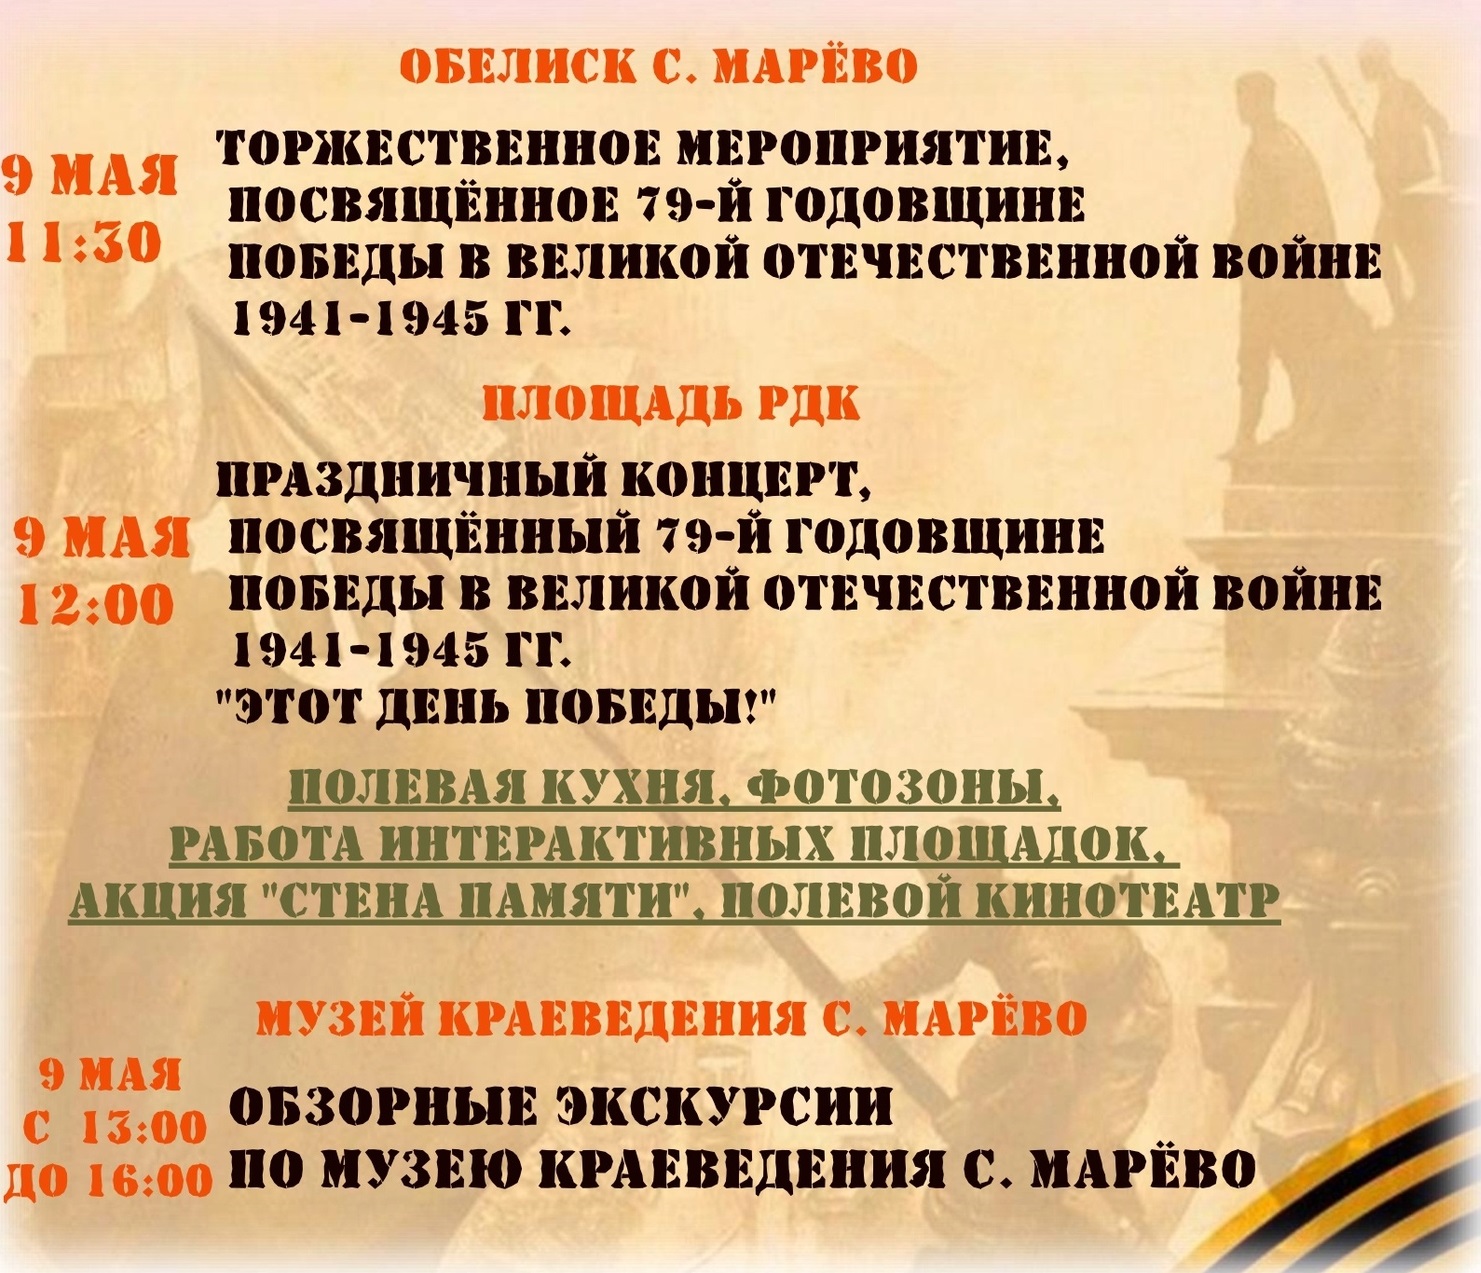 Программа мероприятий, посвящённых празднованию 79-й годовщины Победы в Великой Отечественной войне.